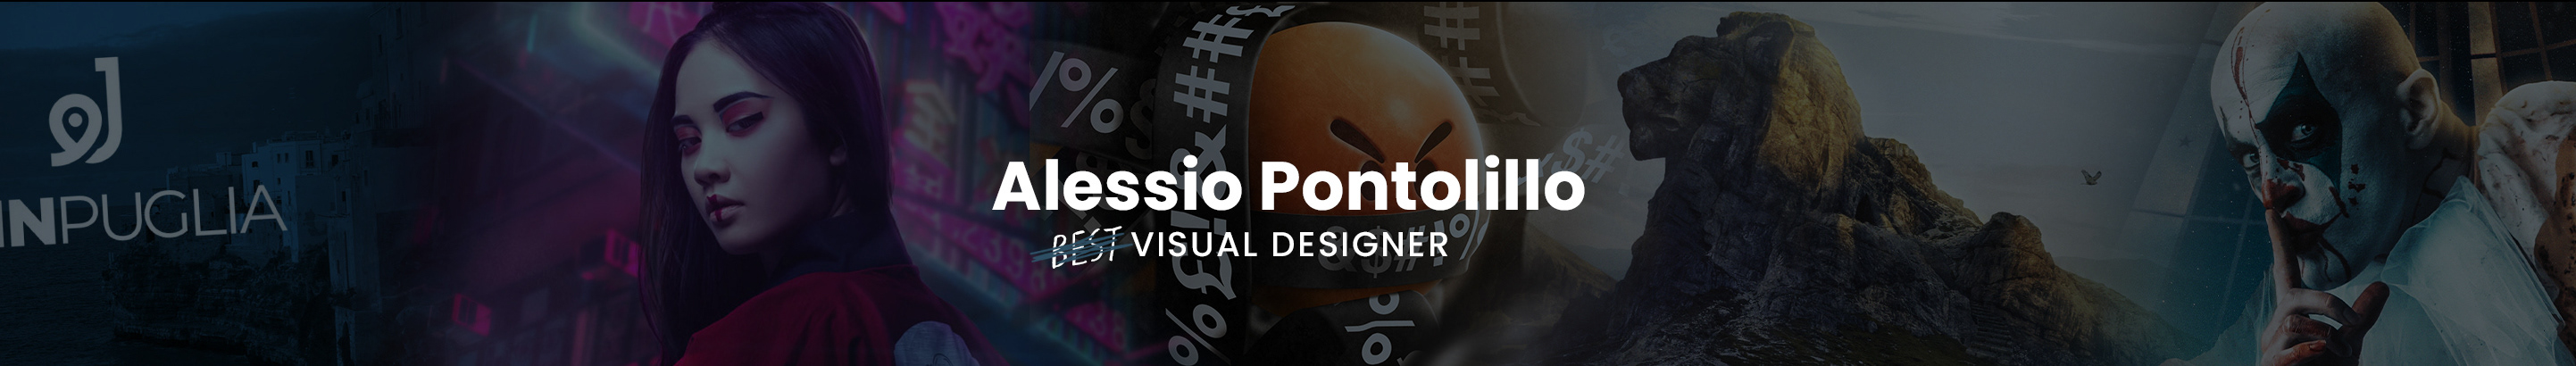 Alessio Pontolillo's profile banner